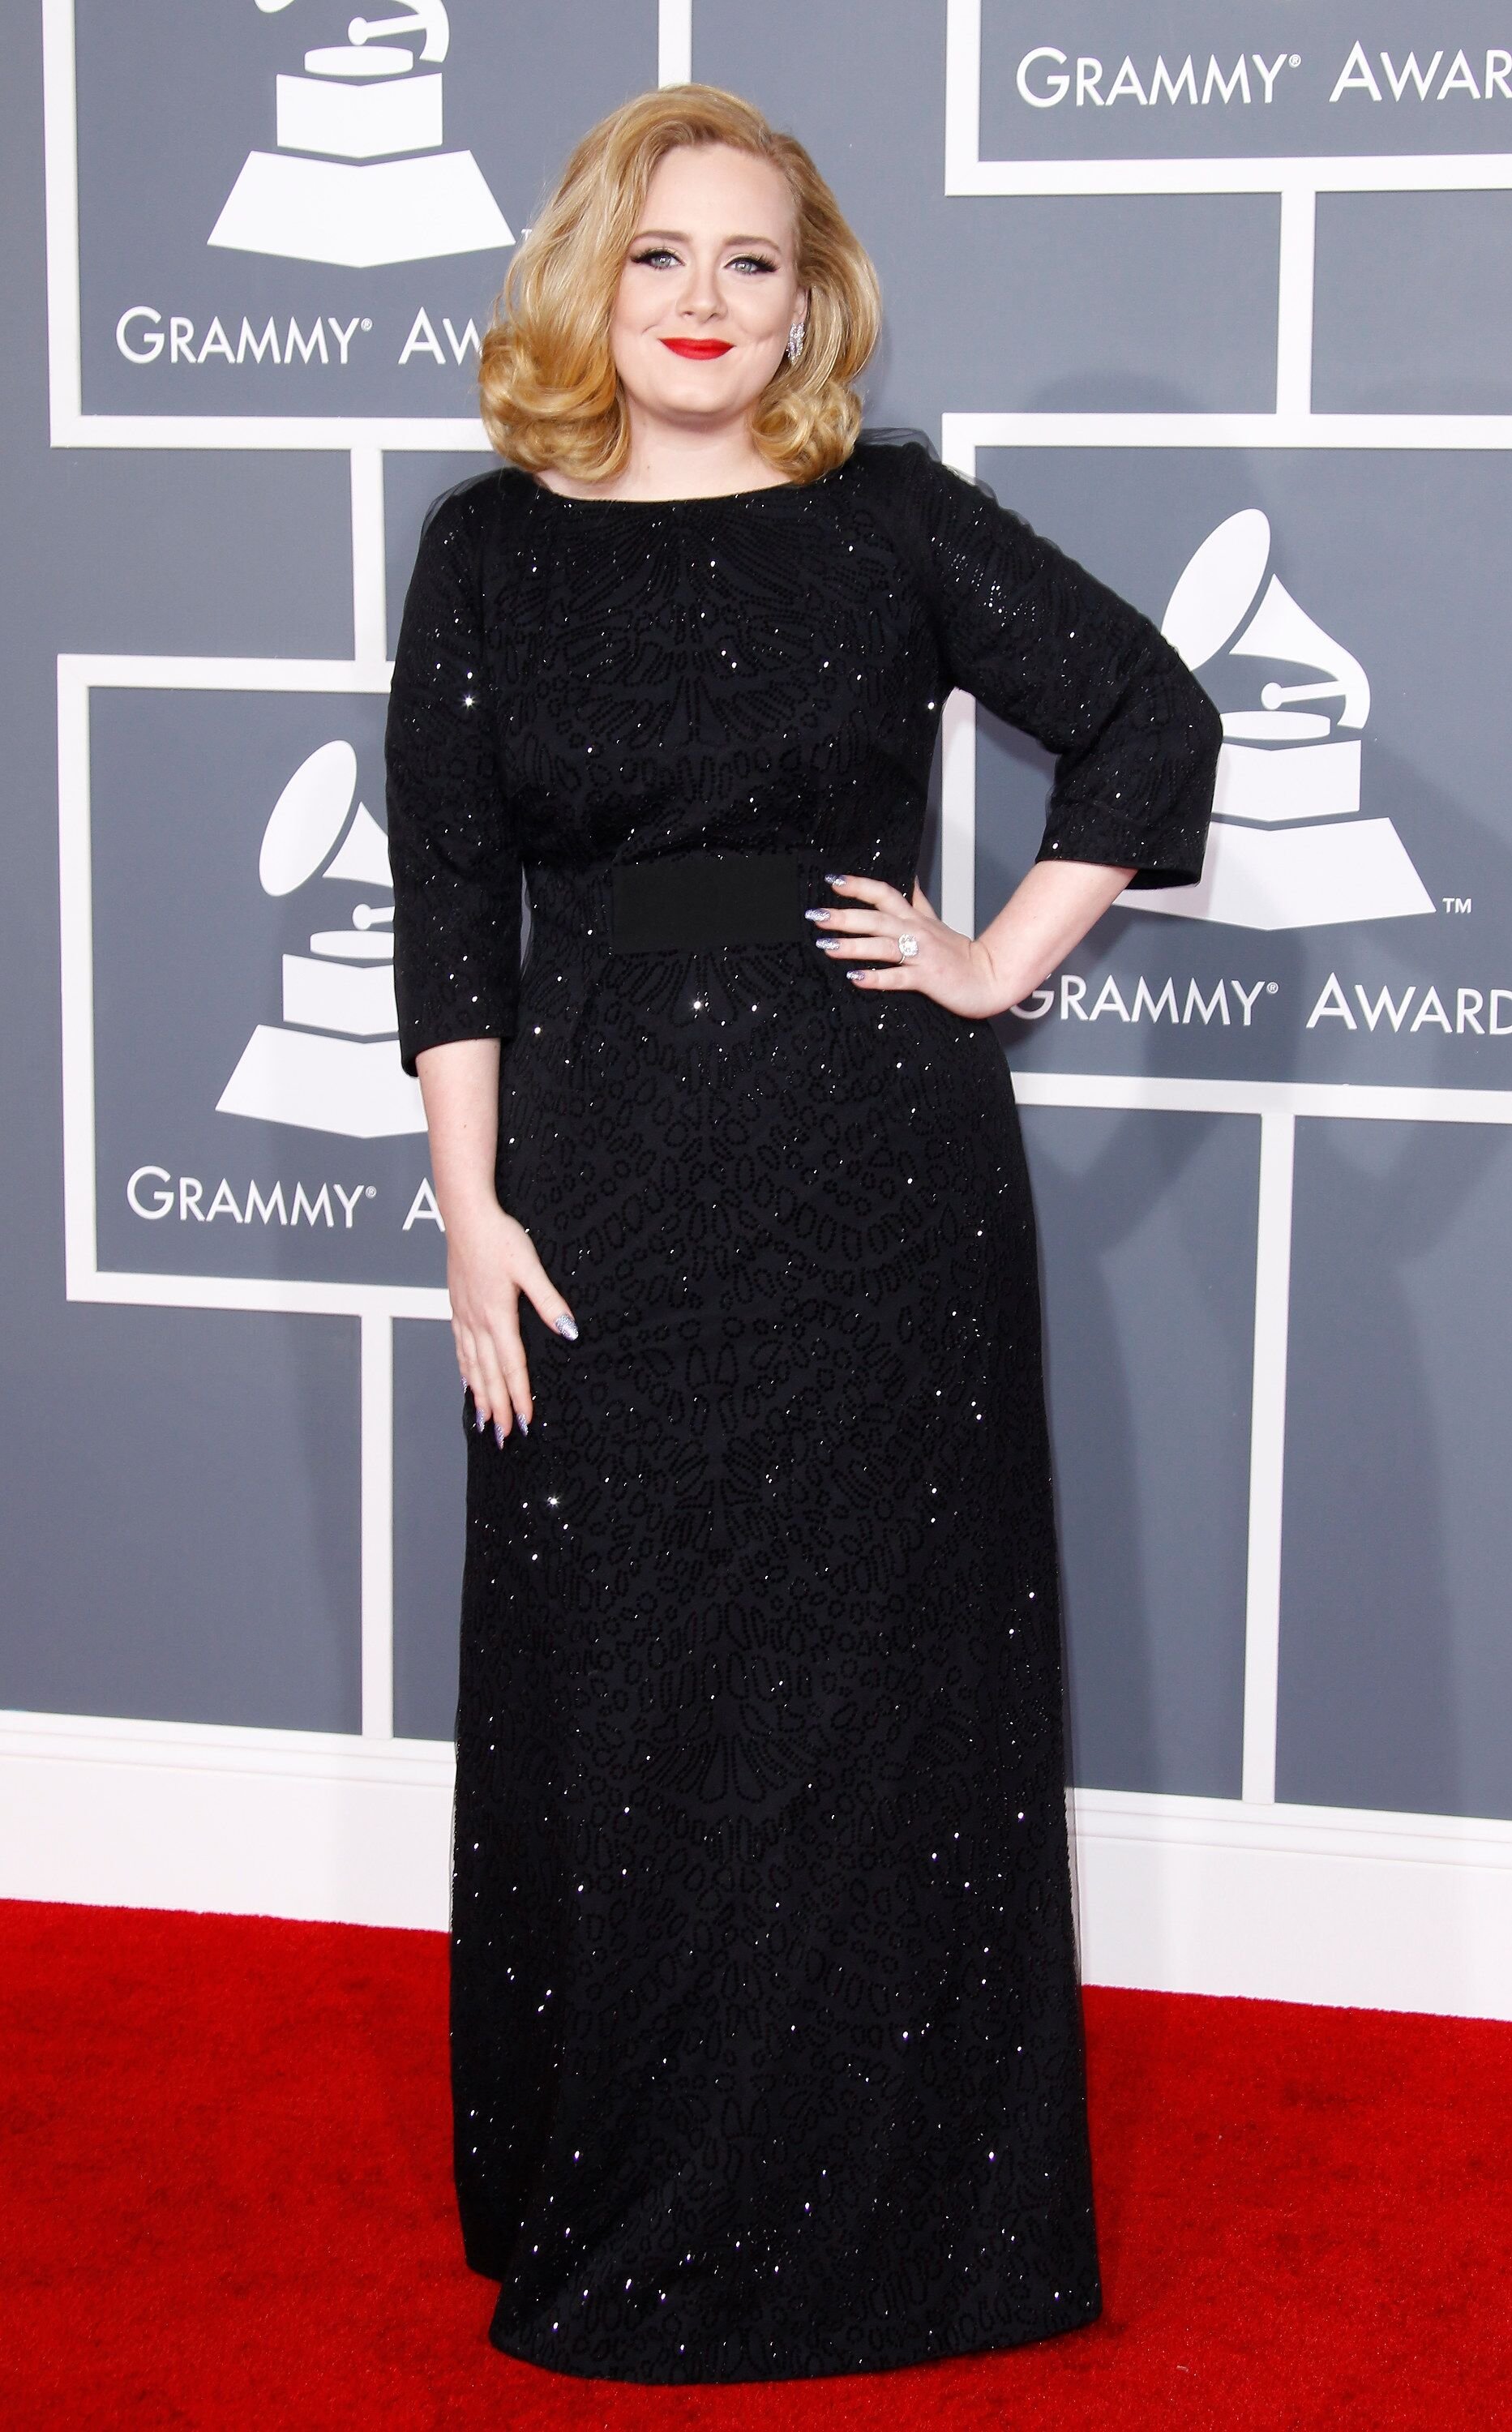 La cantante Adele llega a la 54a Entrega Anual de los Premios Grammy celebrada en el Staples Center el 12 de febrero de 2012 en Los Ángeles, California. | Foto: WireImage